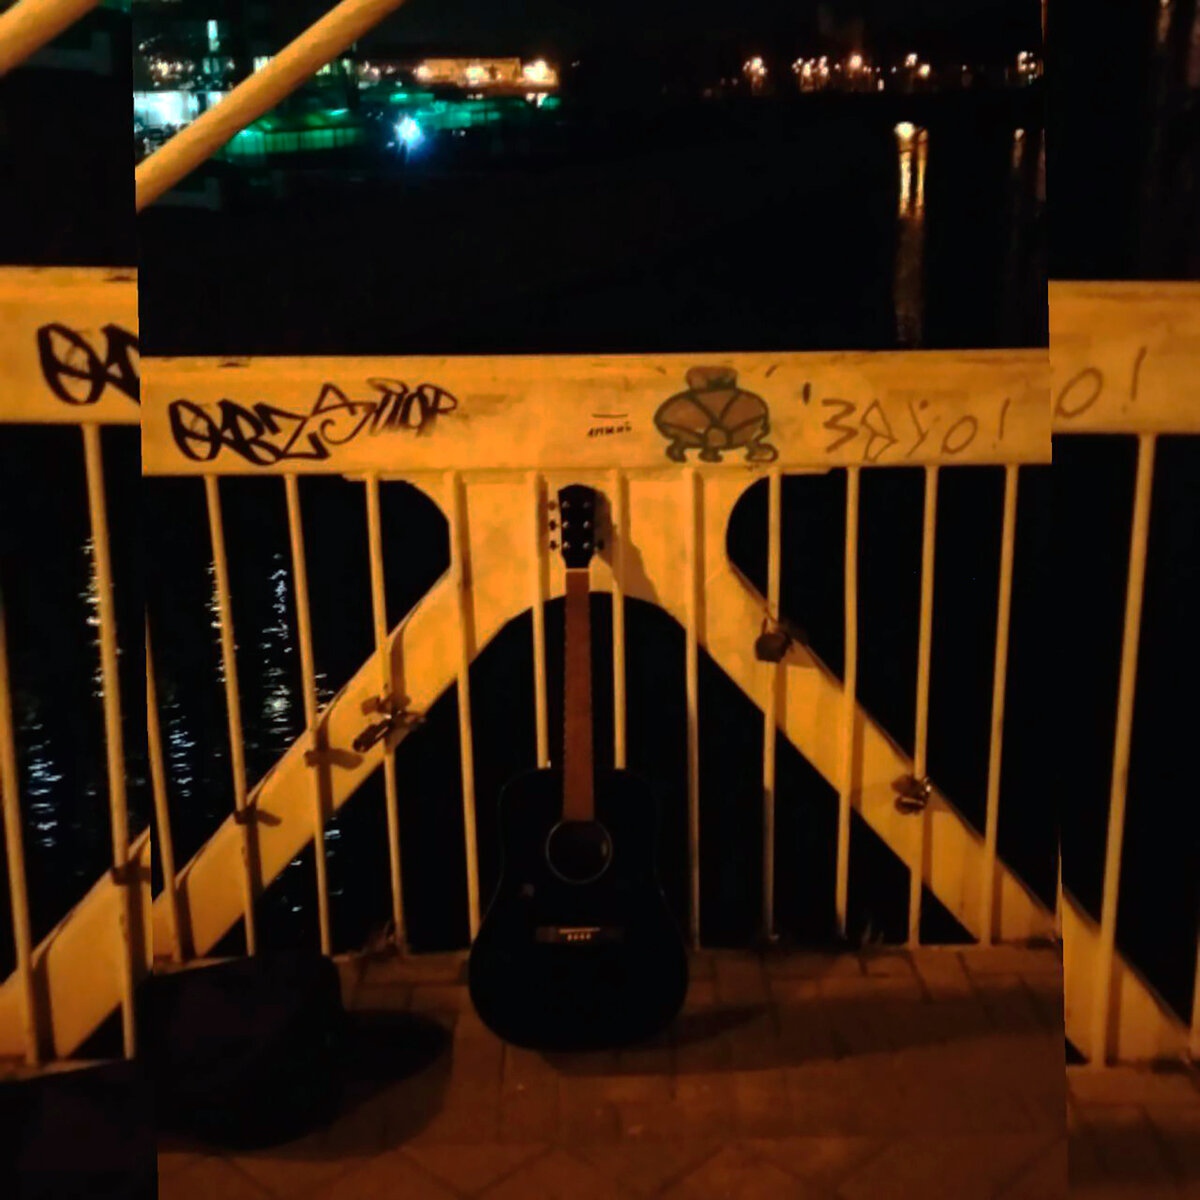 Обложка к песне, фото сделано на том самом мосту.